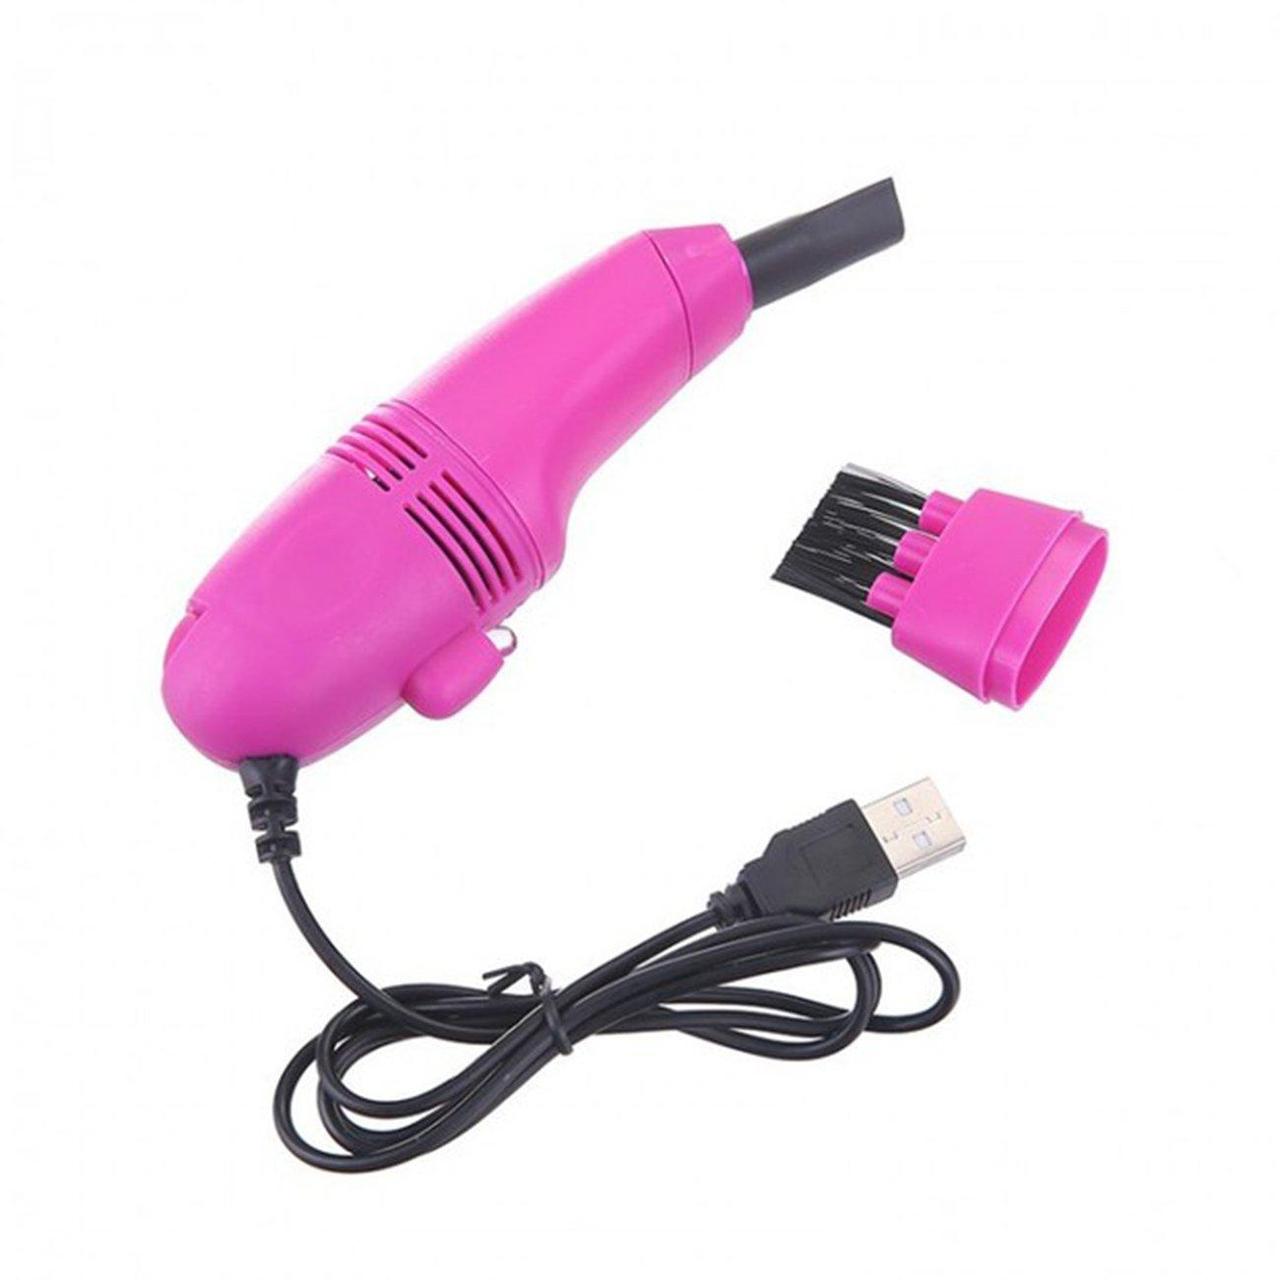 Мини USB пылесос для клавиатуры, цвет фиолетовый - Оплата Kaspi Pay